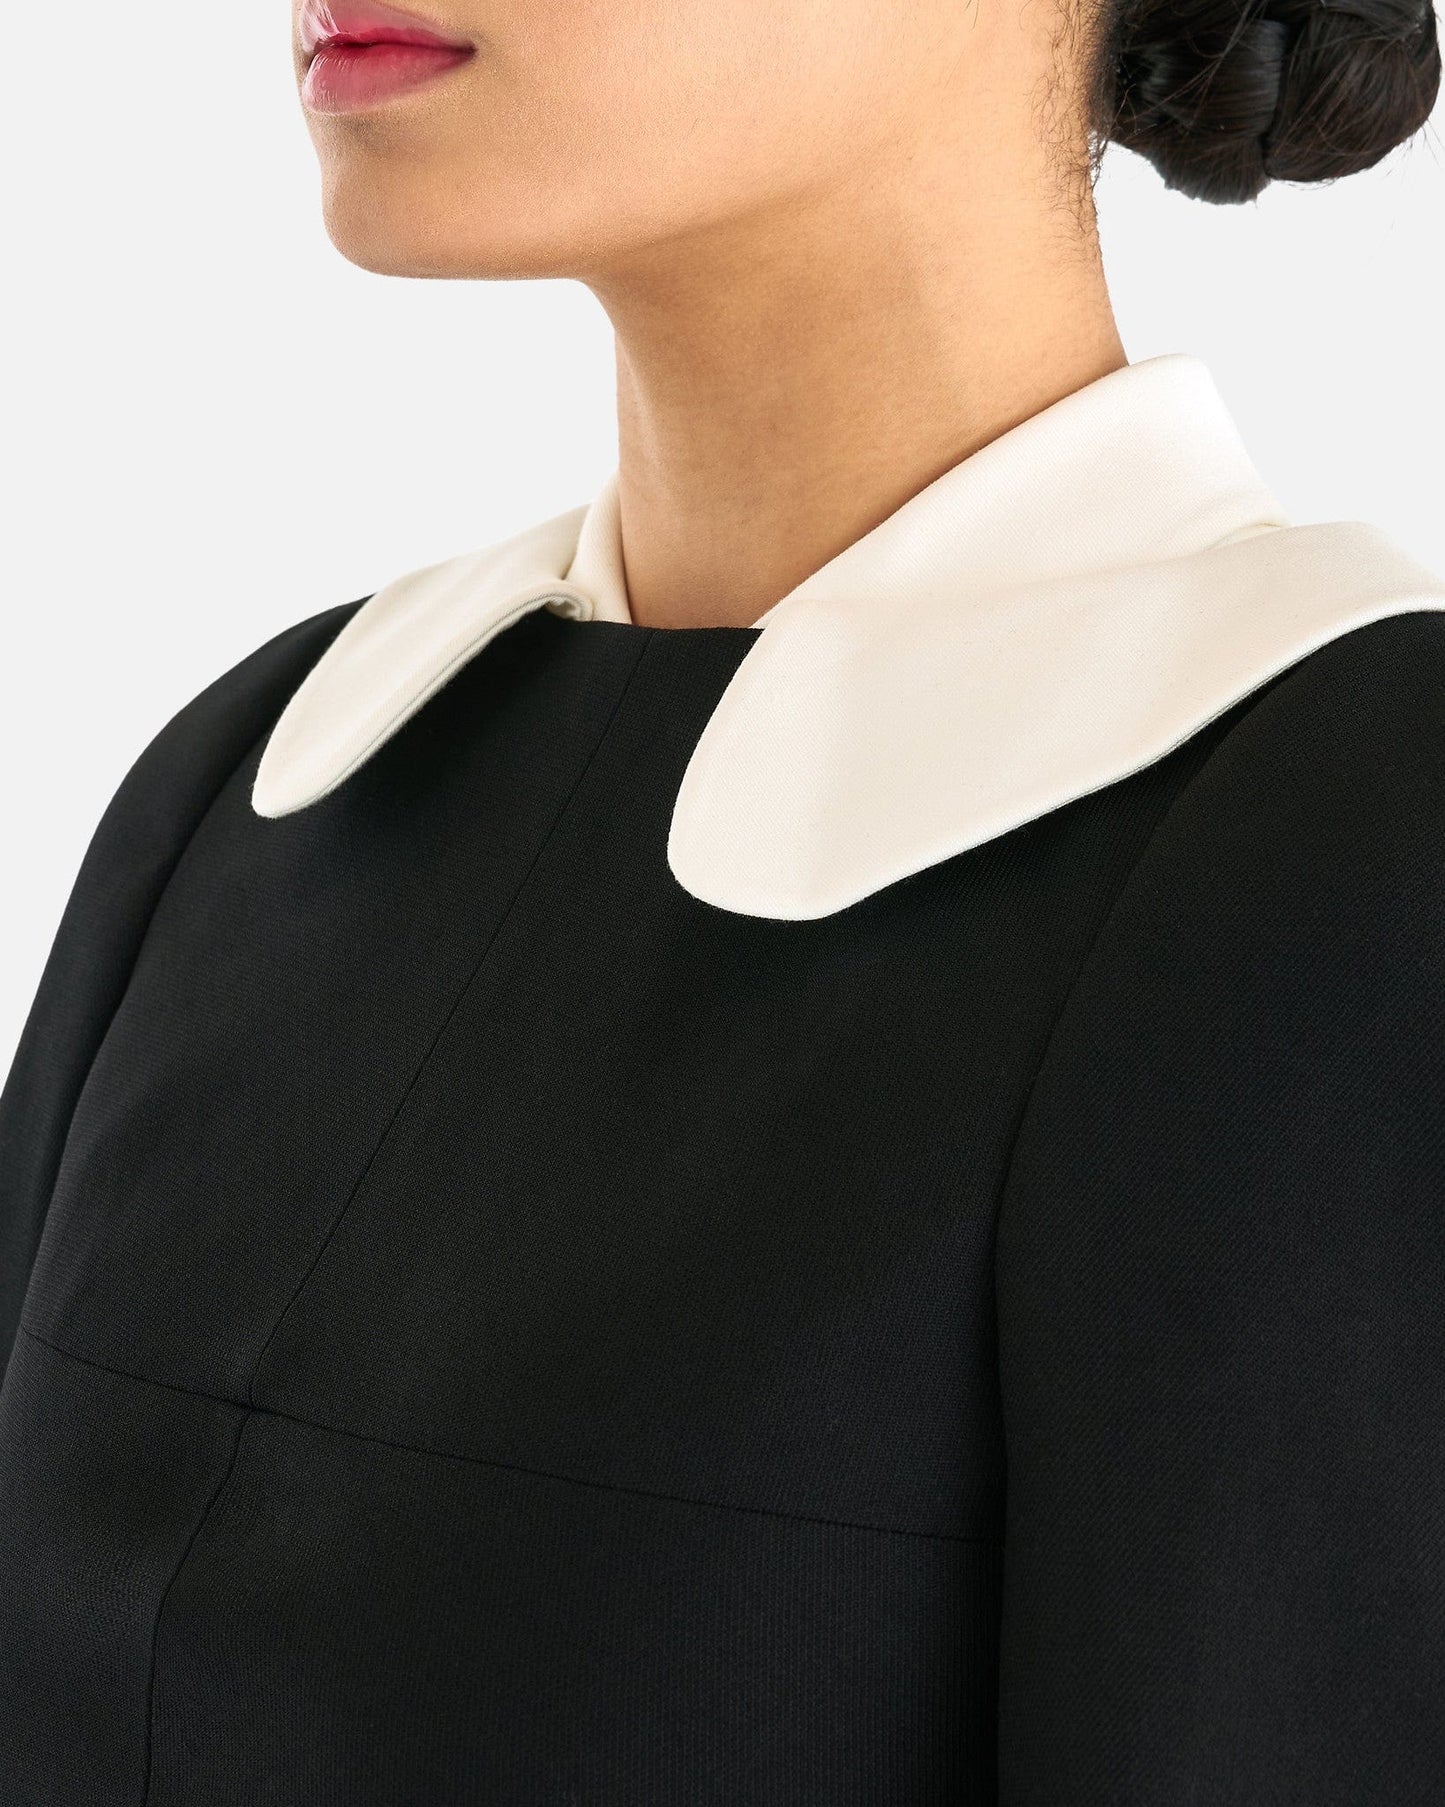 ShuShu/Tong Women Tops Double Collar Long-Sleeved Top in Black